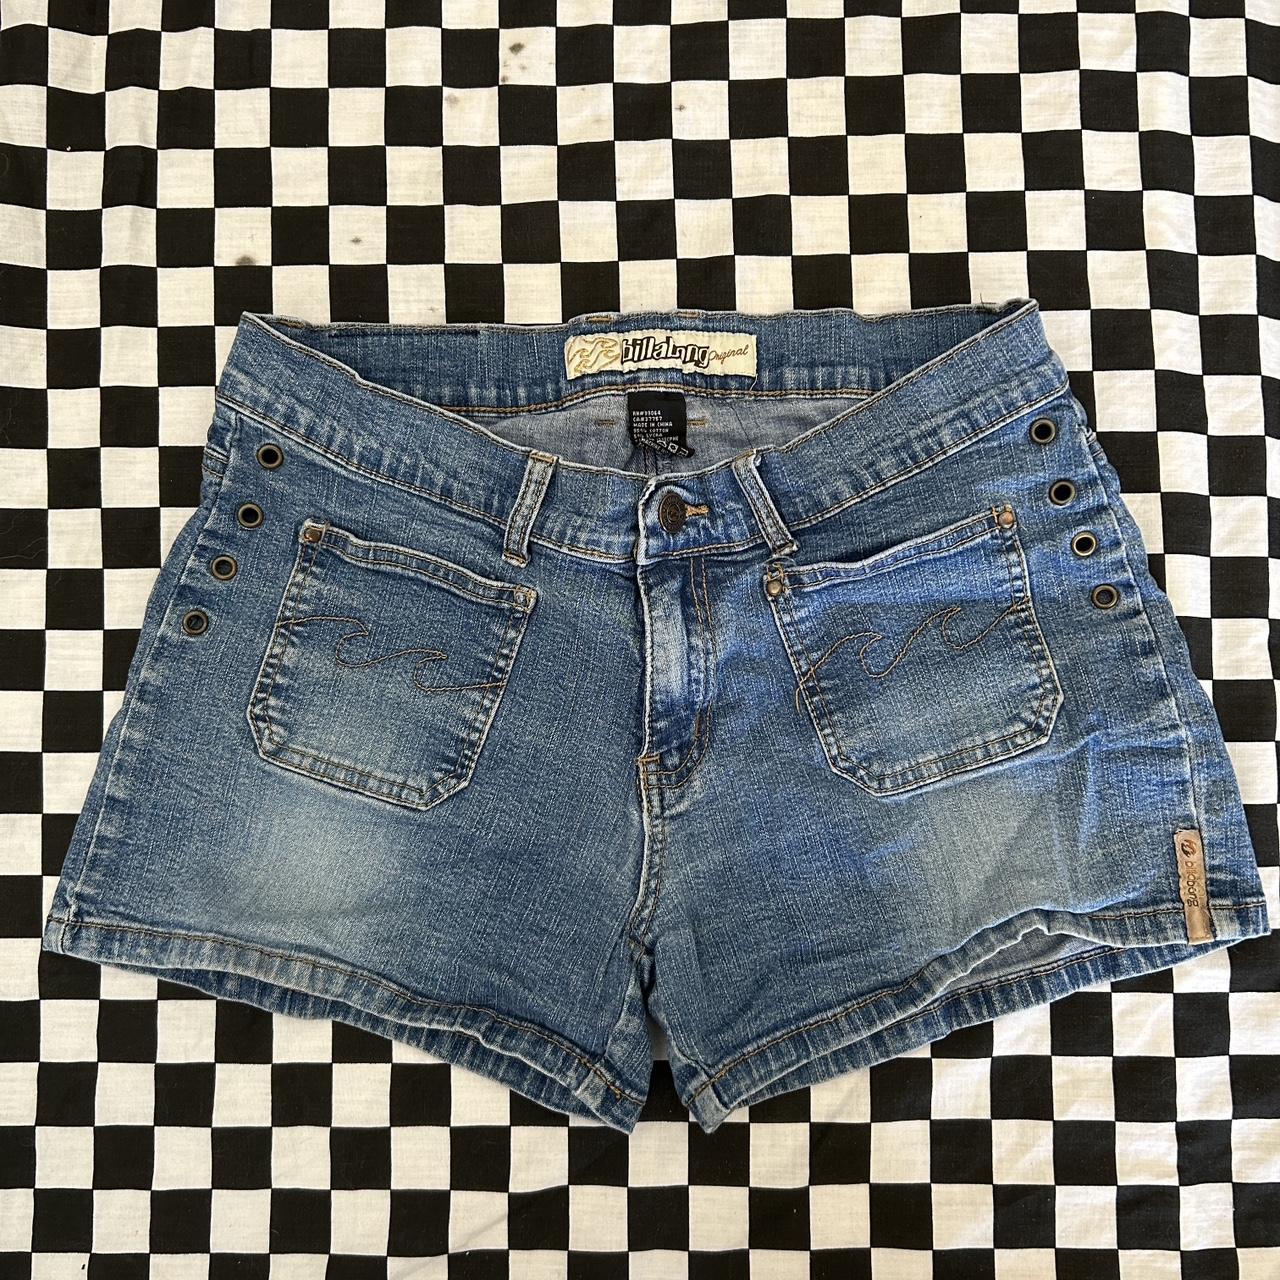 Billabong Women's Blue and Tan Shorts | Depop